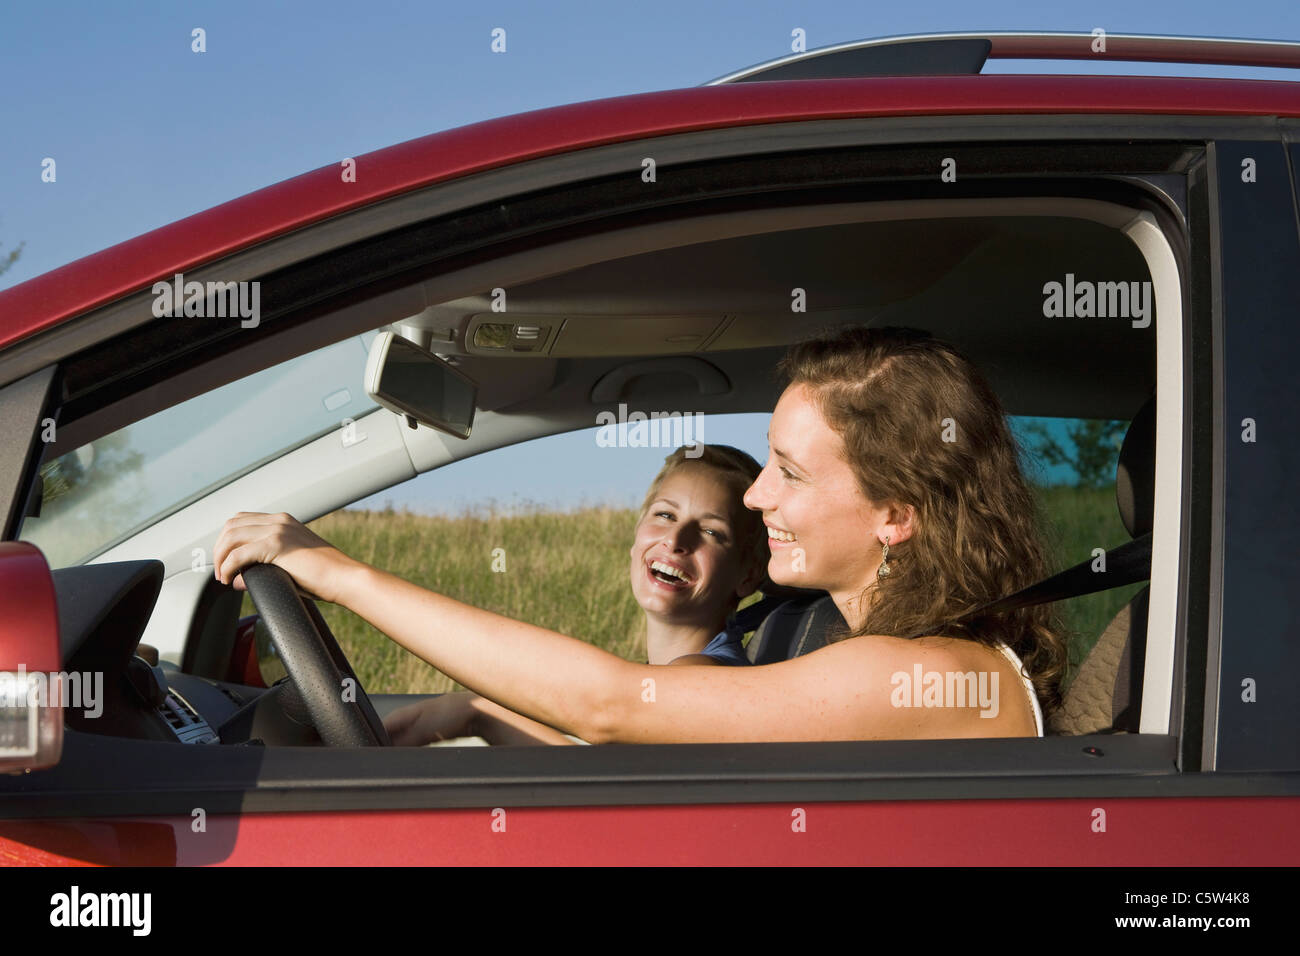 Allemagne, Bavière, deux jeunes femmes au volant voiture, side view, portrait Banque D'Images